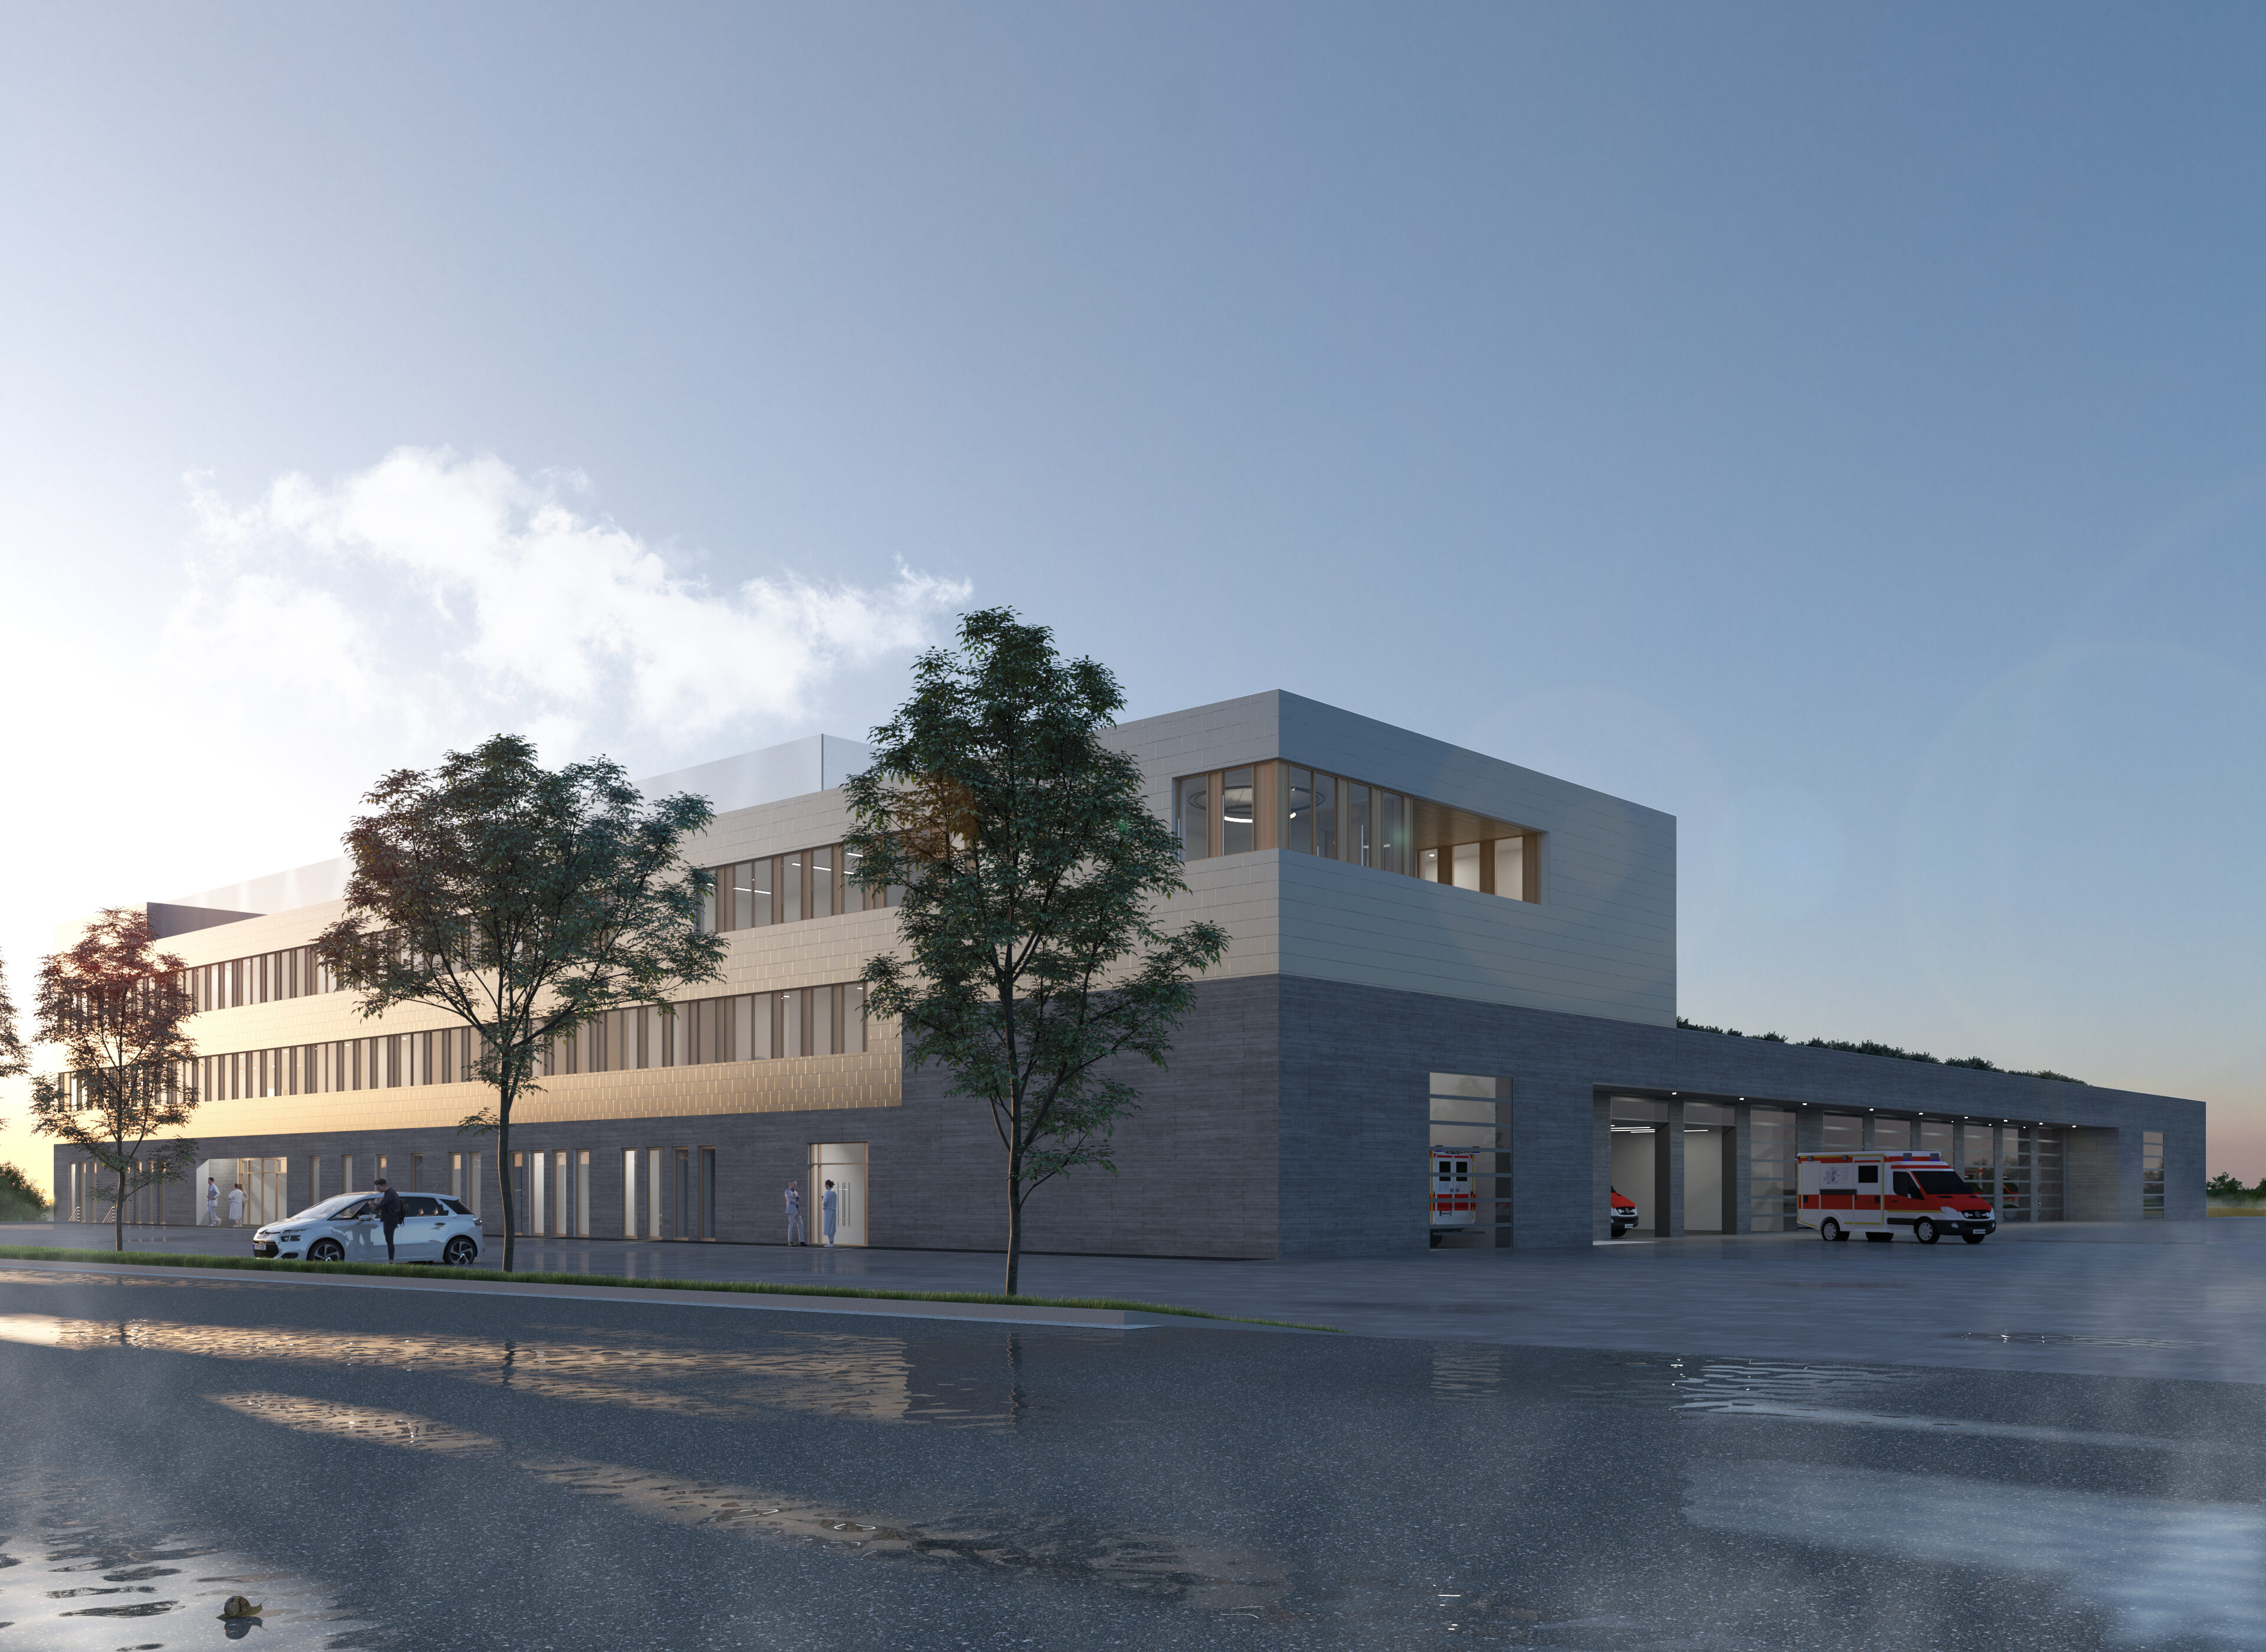 Neubau Gefahrenabwehrzentrum Kreis Olpe © SUPERGELB ARCHITEKTEN, Visualisierung Fix Visuals